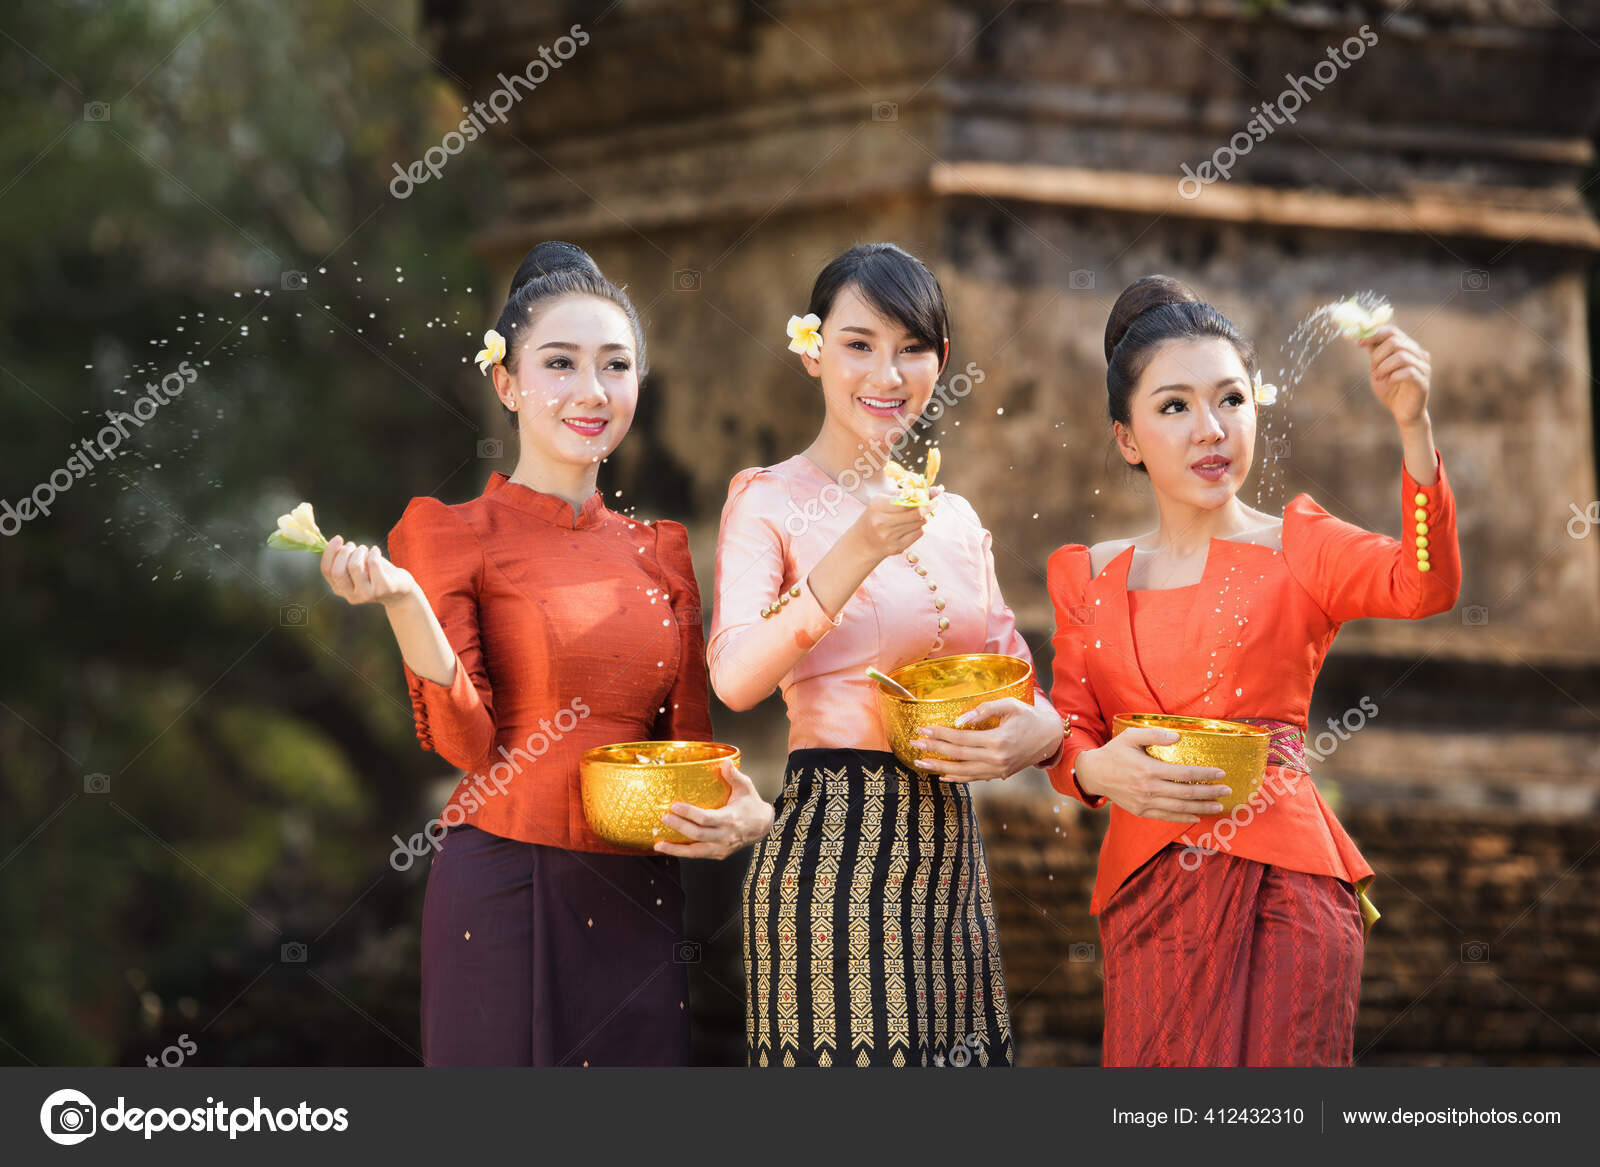 Thai girls stock photos royalty free thai girls images